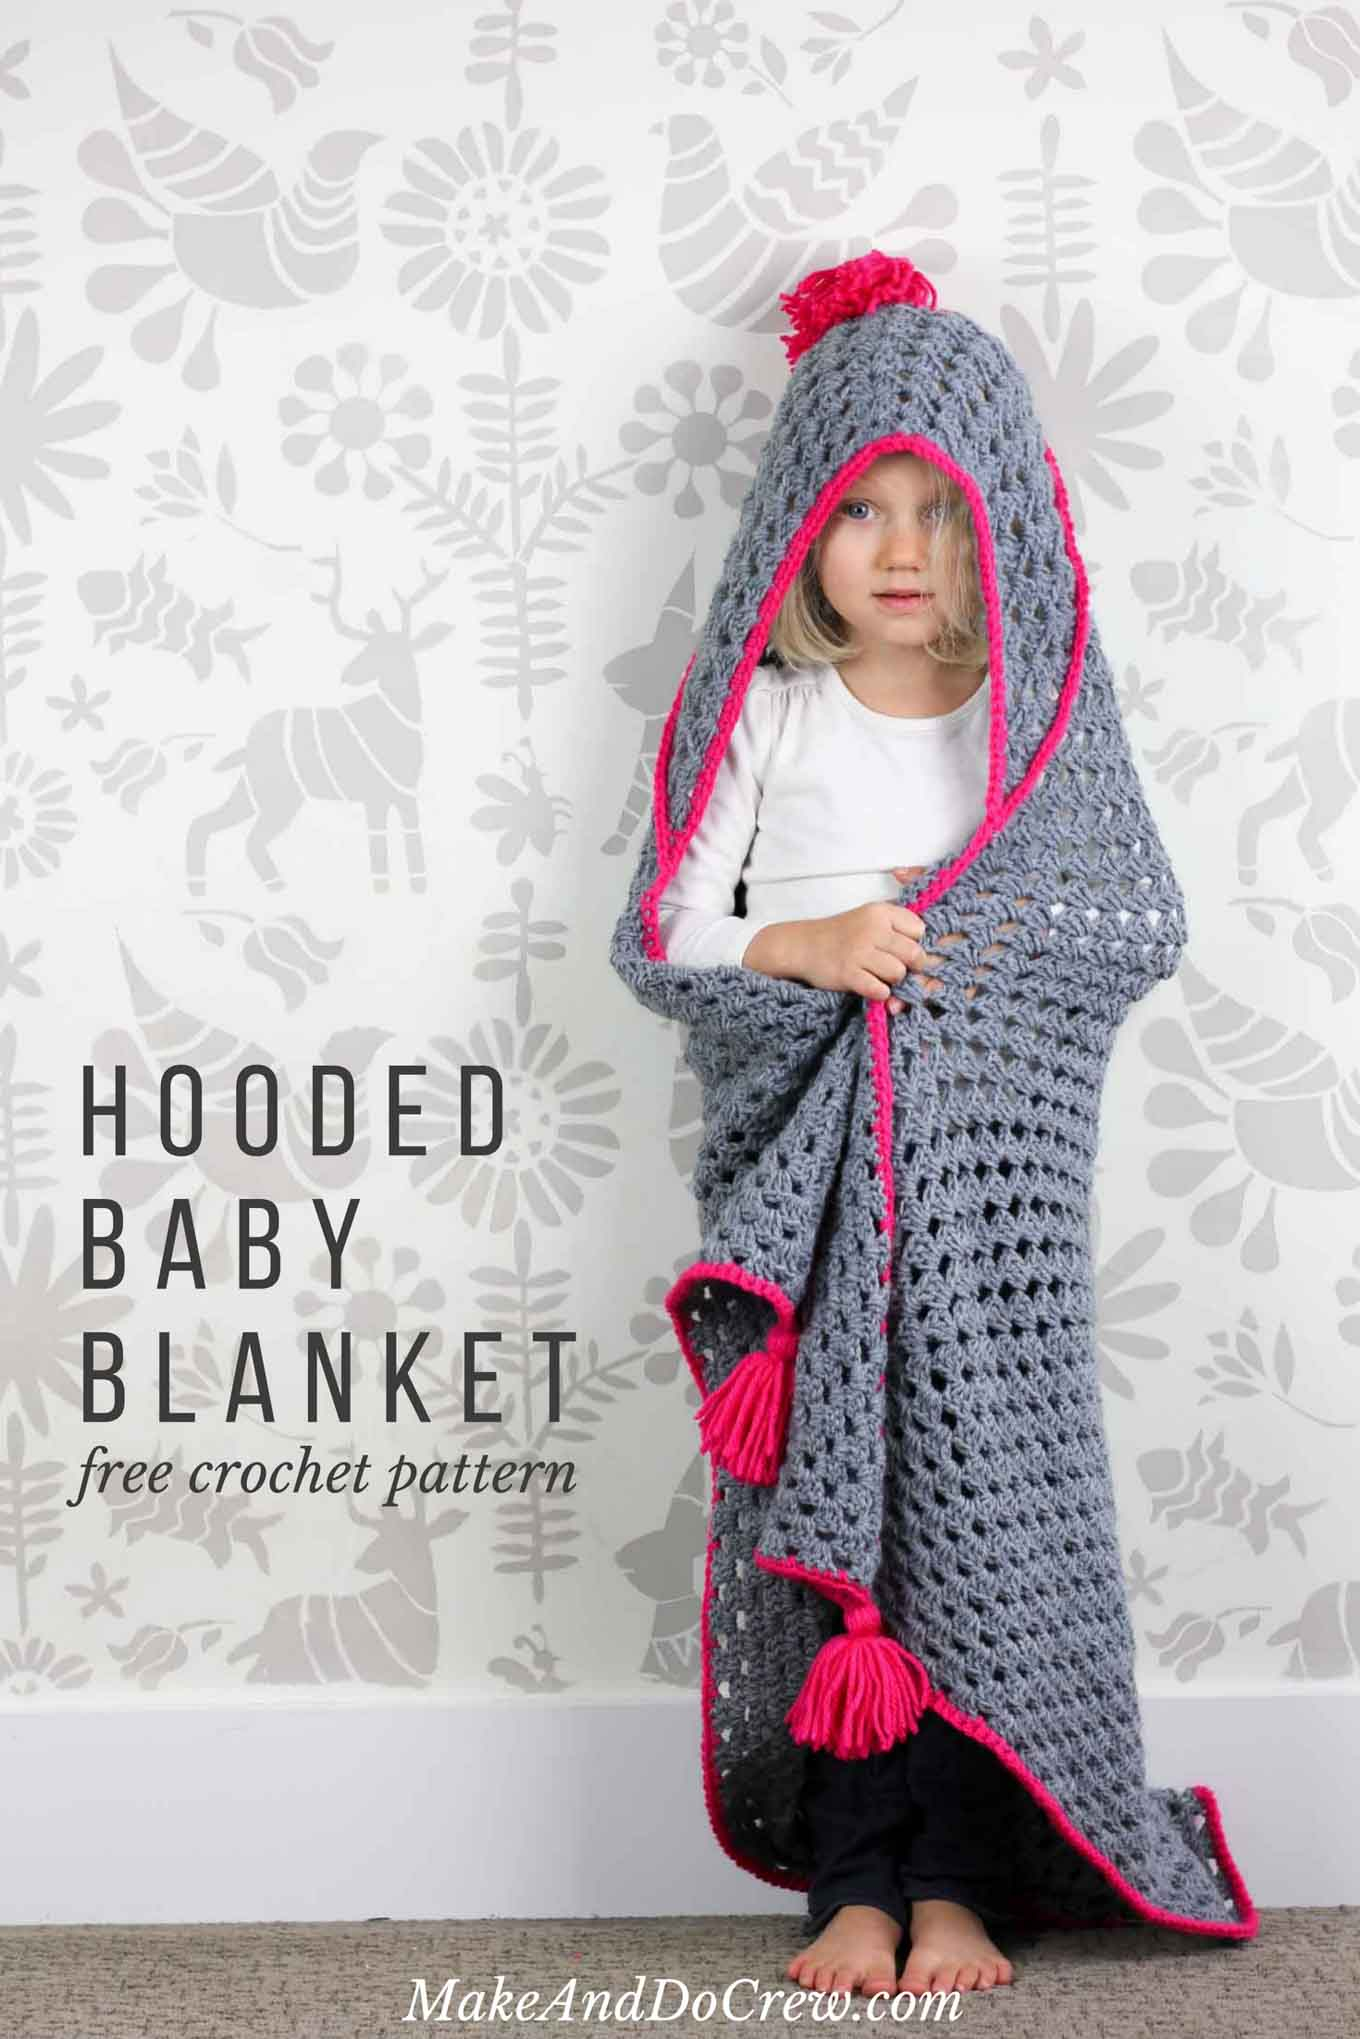 Crochet Cloak With Hood Pattern Modern Crochet Hooded Ba Blanket Free Pattern For Charity